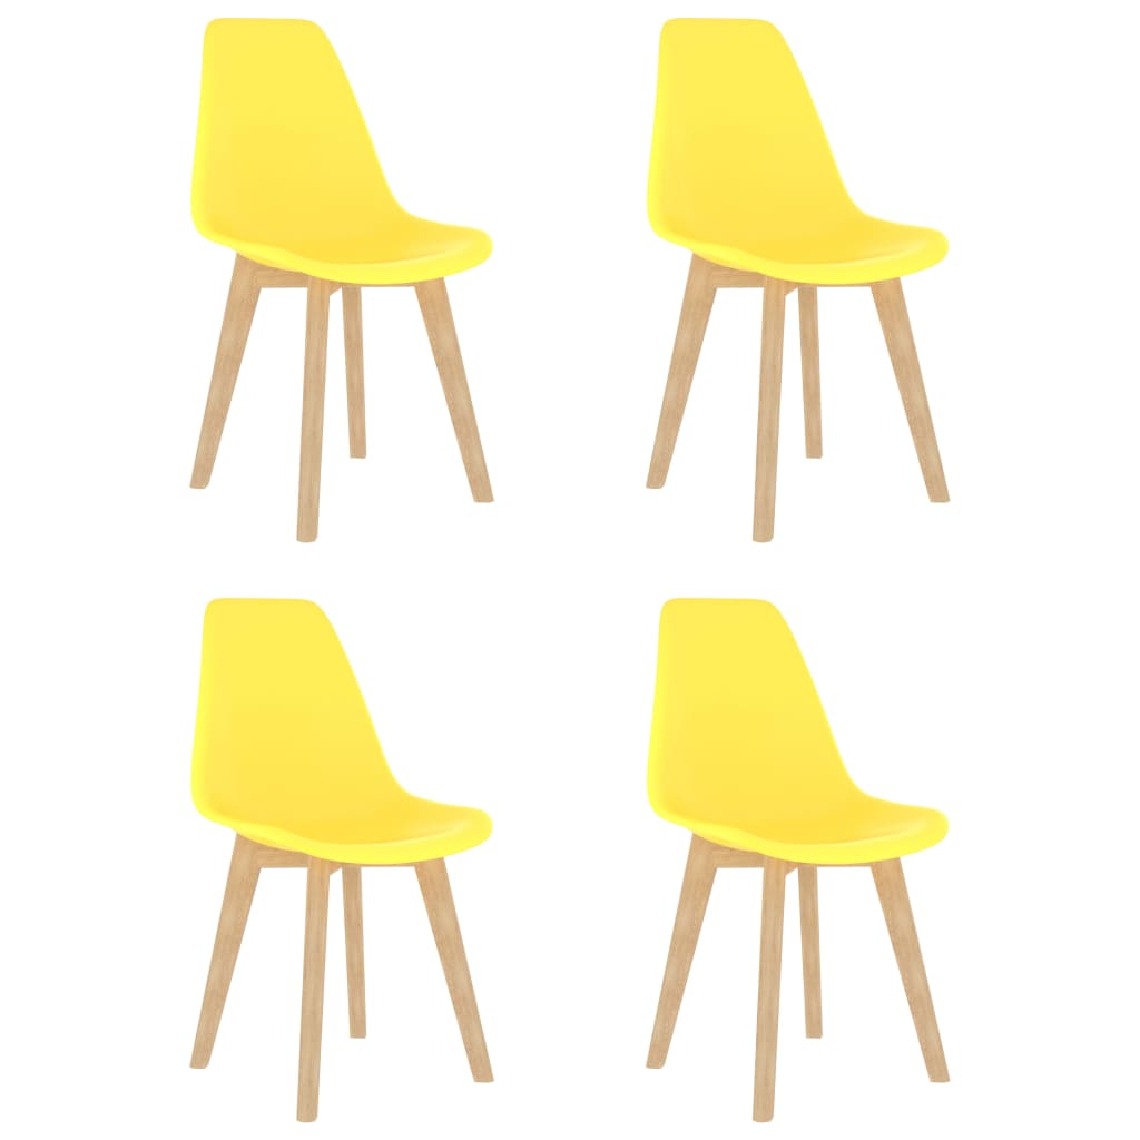 Chunhelife - Chunhelife Chaises de salle à manger 4 pcs Jaune Plastique - Chaises